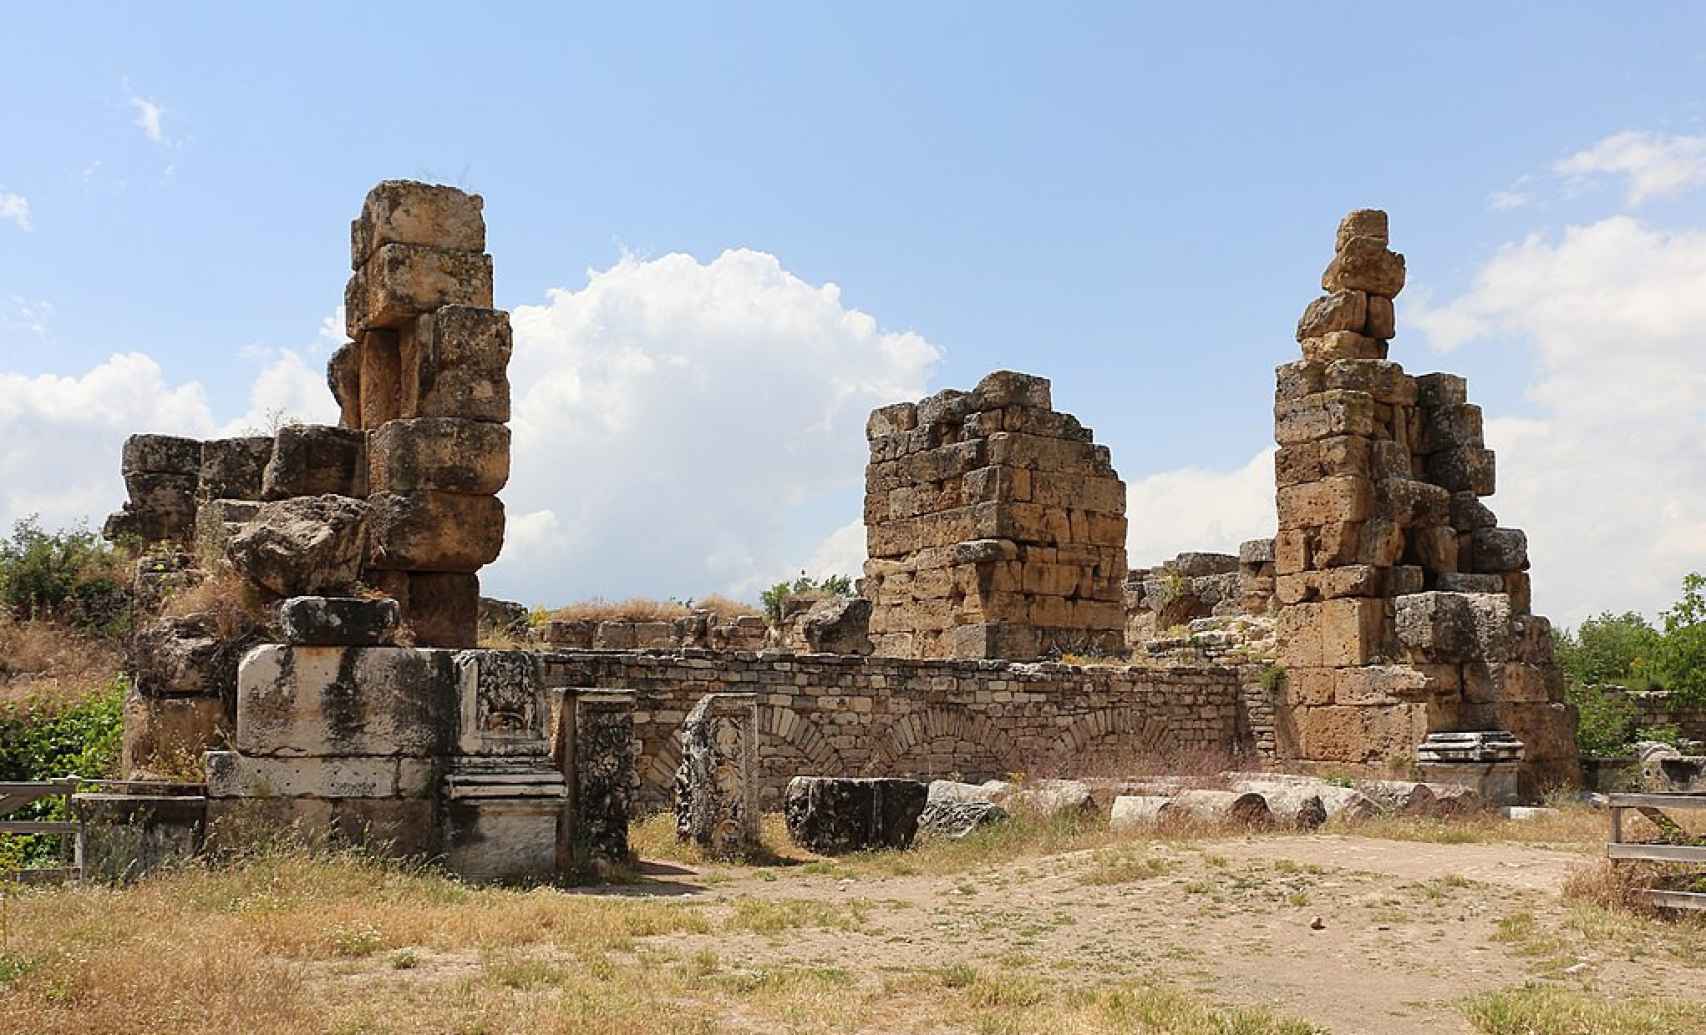 Vestigios de los baños de Adriano en la ciudad de Afrodisias (Turquía).